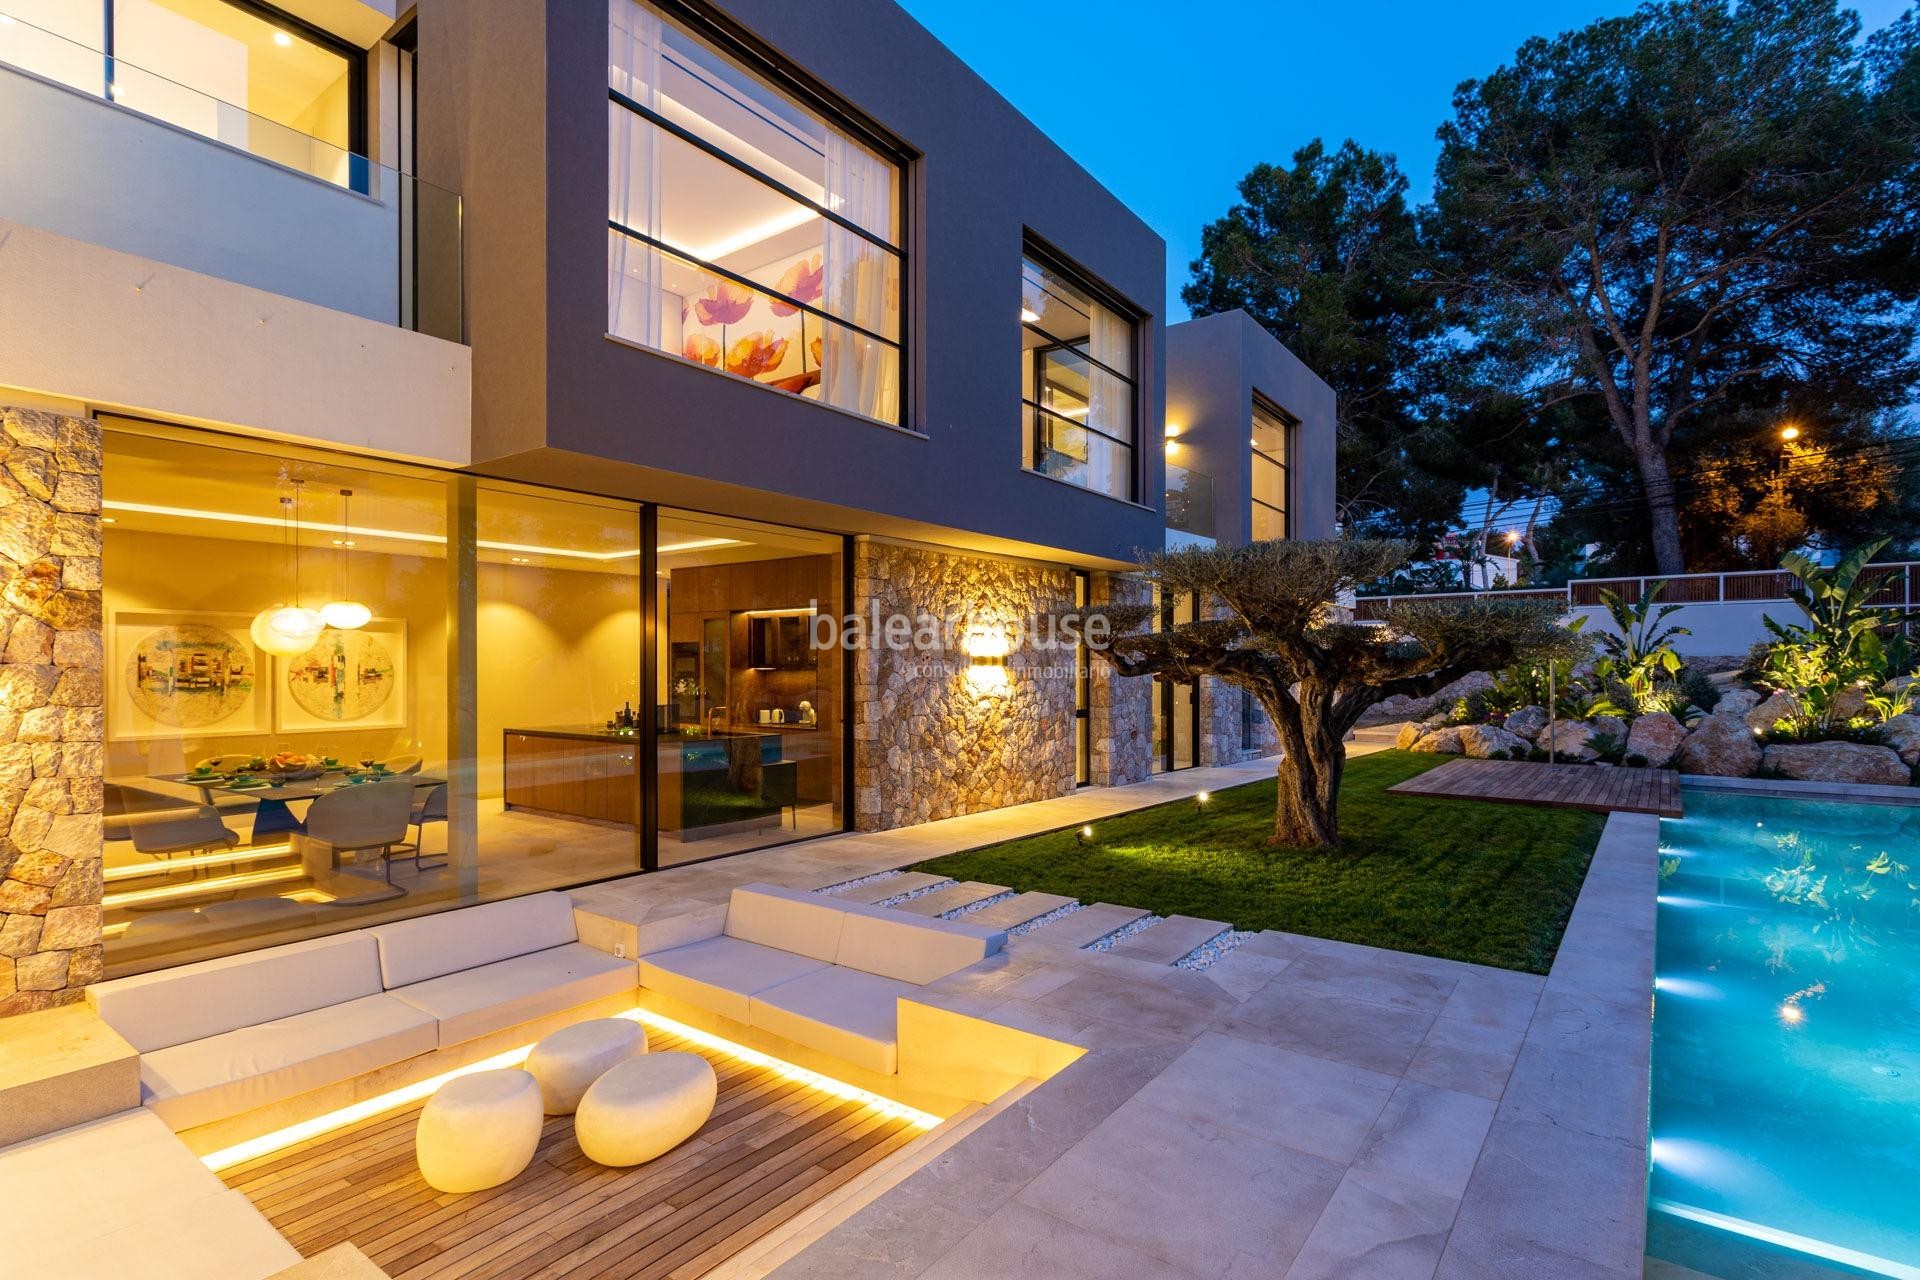 Gran villa de diseño cerca de playas con excelentes calidades en la privilegiada zona de Santa Ponsa